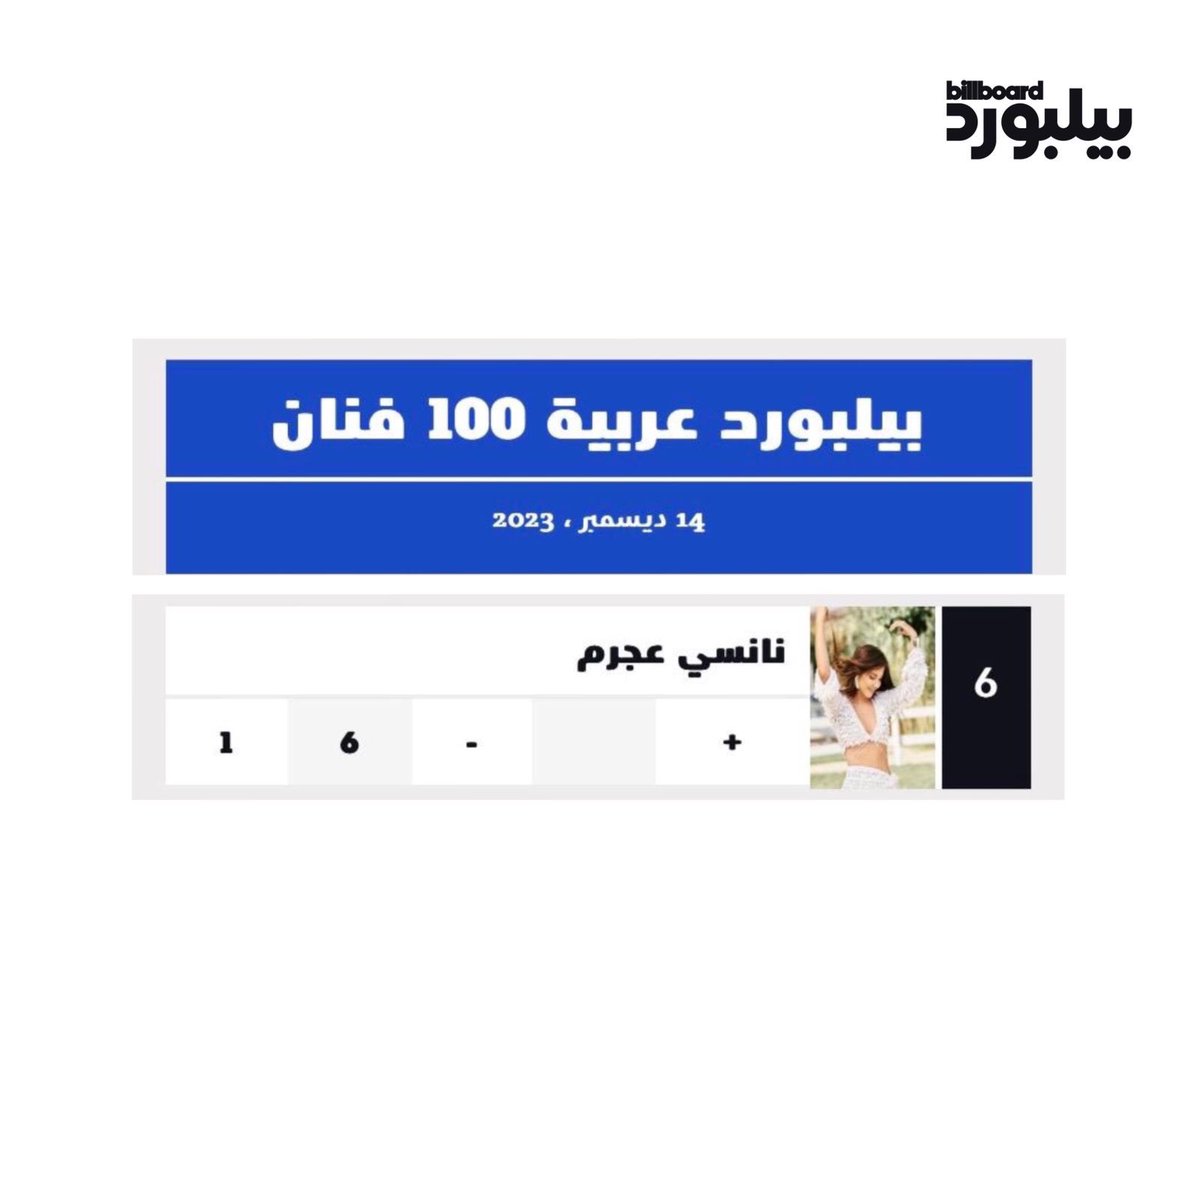 إحتلت نانسي بالمرتبة السادسة في تصنيف بيلبورد العربية للفنانين بعد إطلاق الموقع للمرة الأولى عربيًا وتتصدر القائمة بـ 5 أغاني 🤍